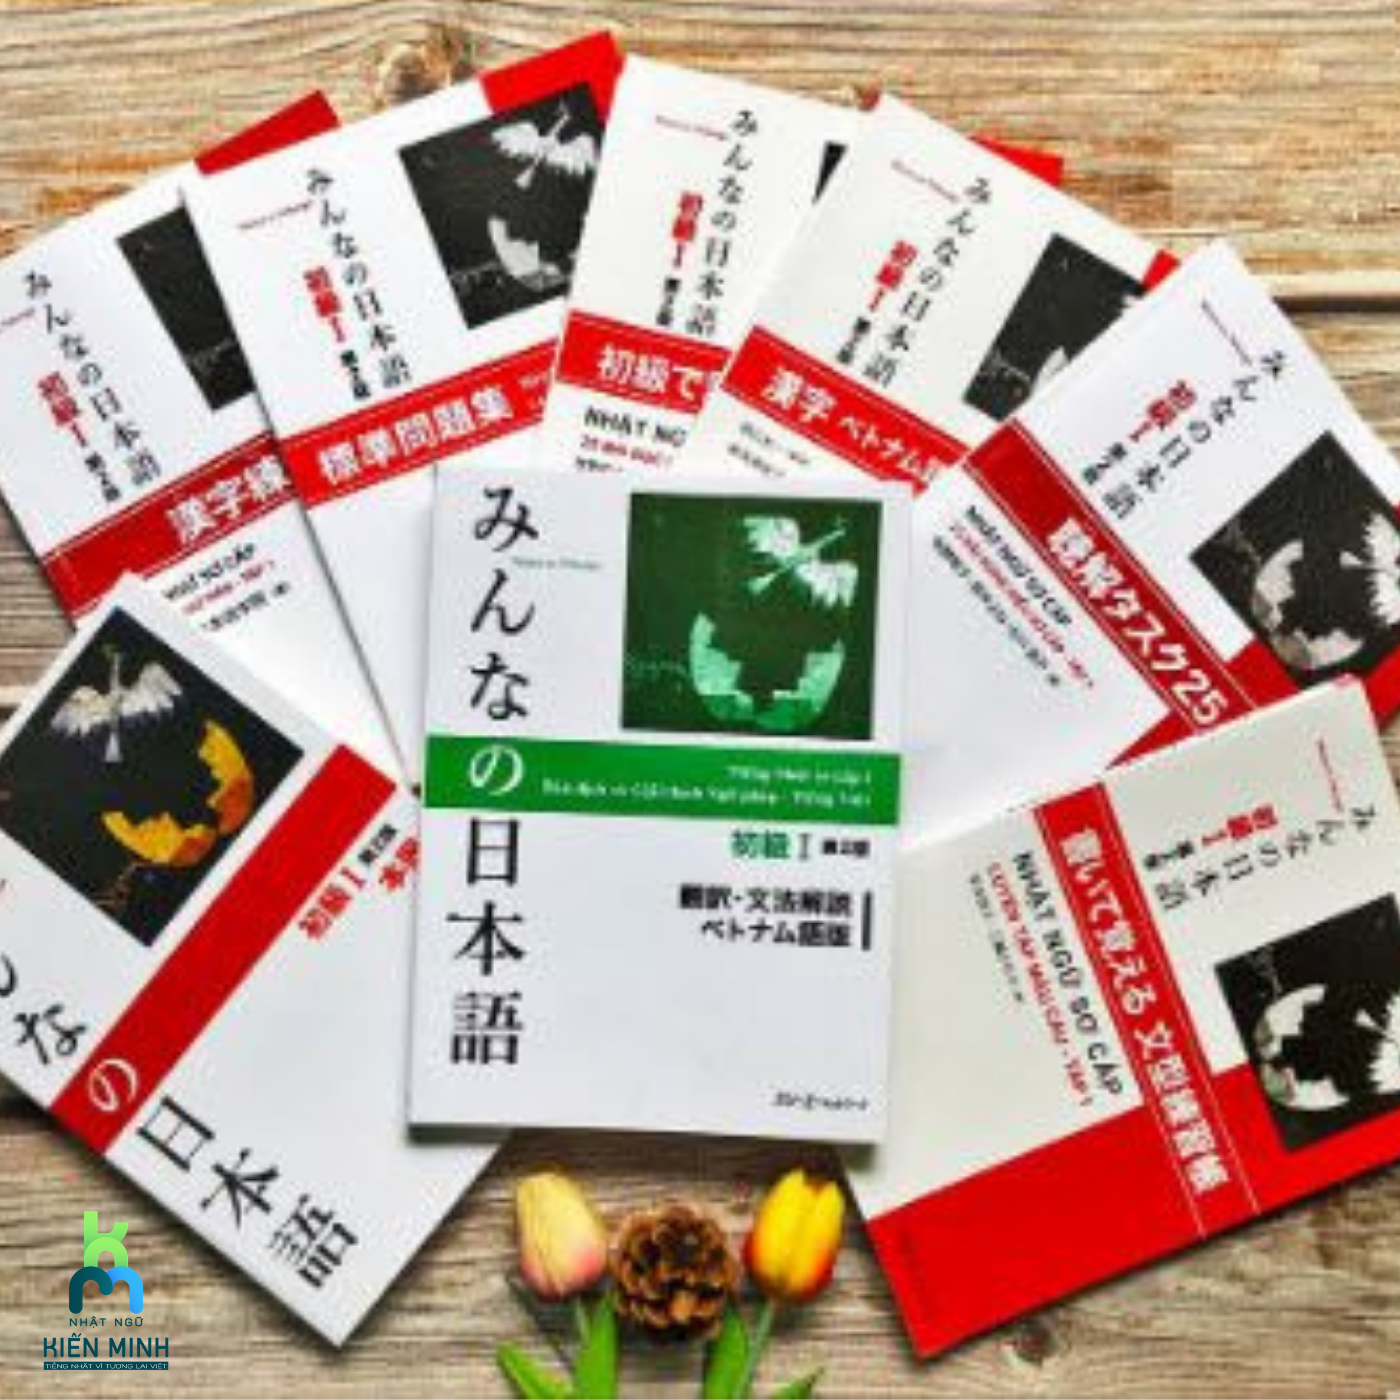 Xây dựng kiến thức nền tảng cùng 6 đầu sách học tiếng Nhật cơ bản hiện nay